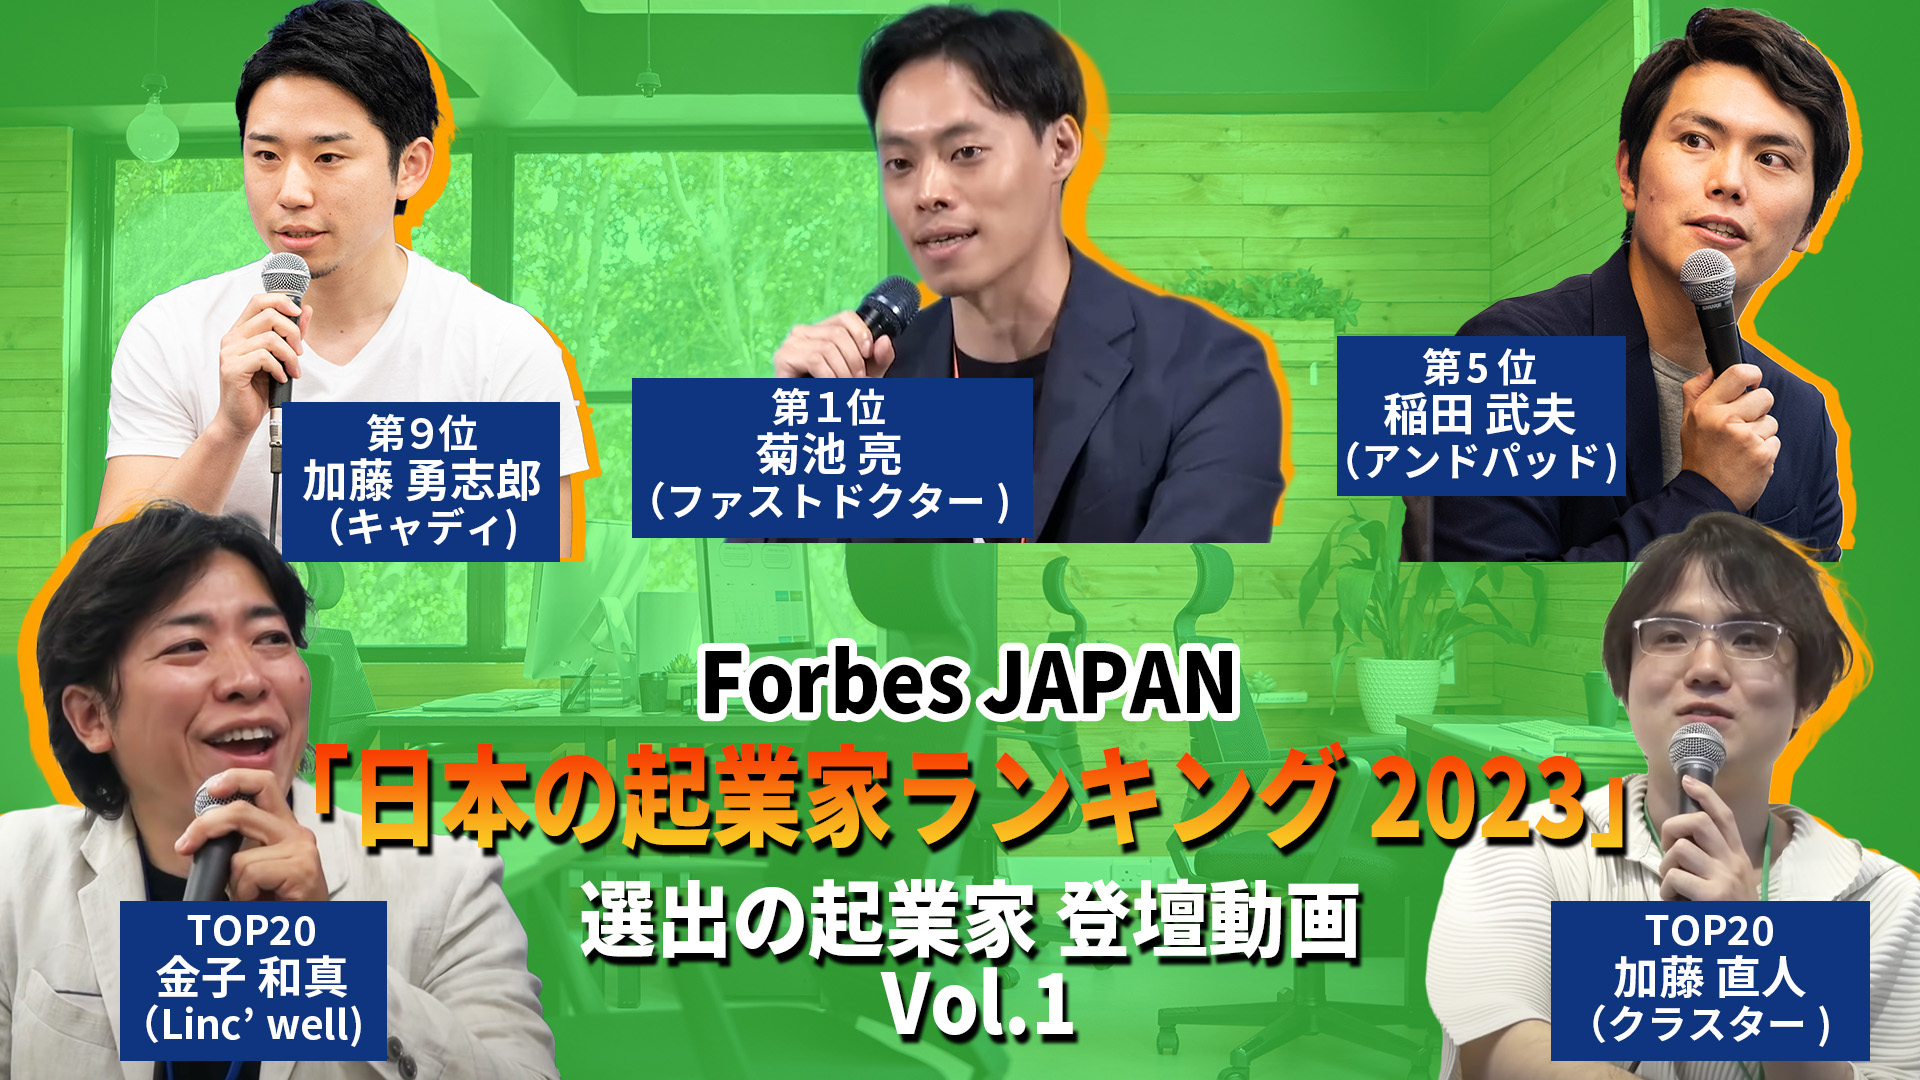 【特集】Forbes JAPAN「日本の起業家ランキング2023」選出の起業家 登壇動画Vol.1